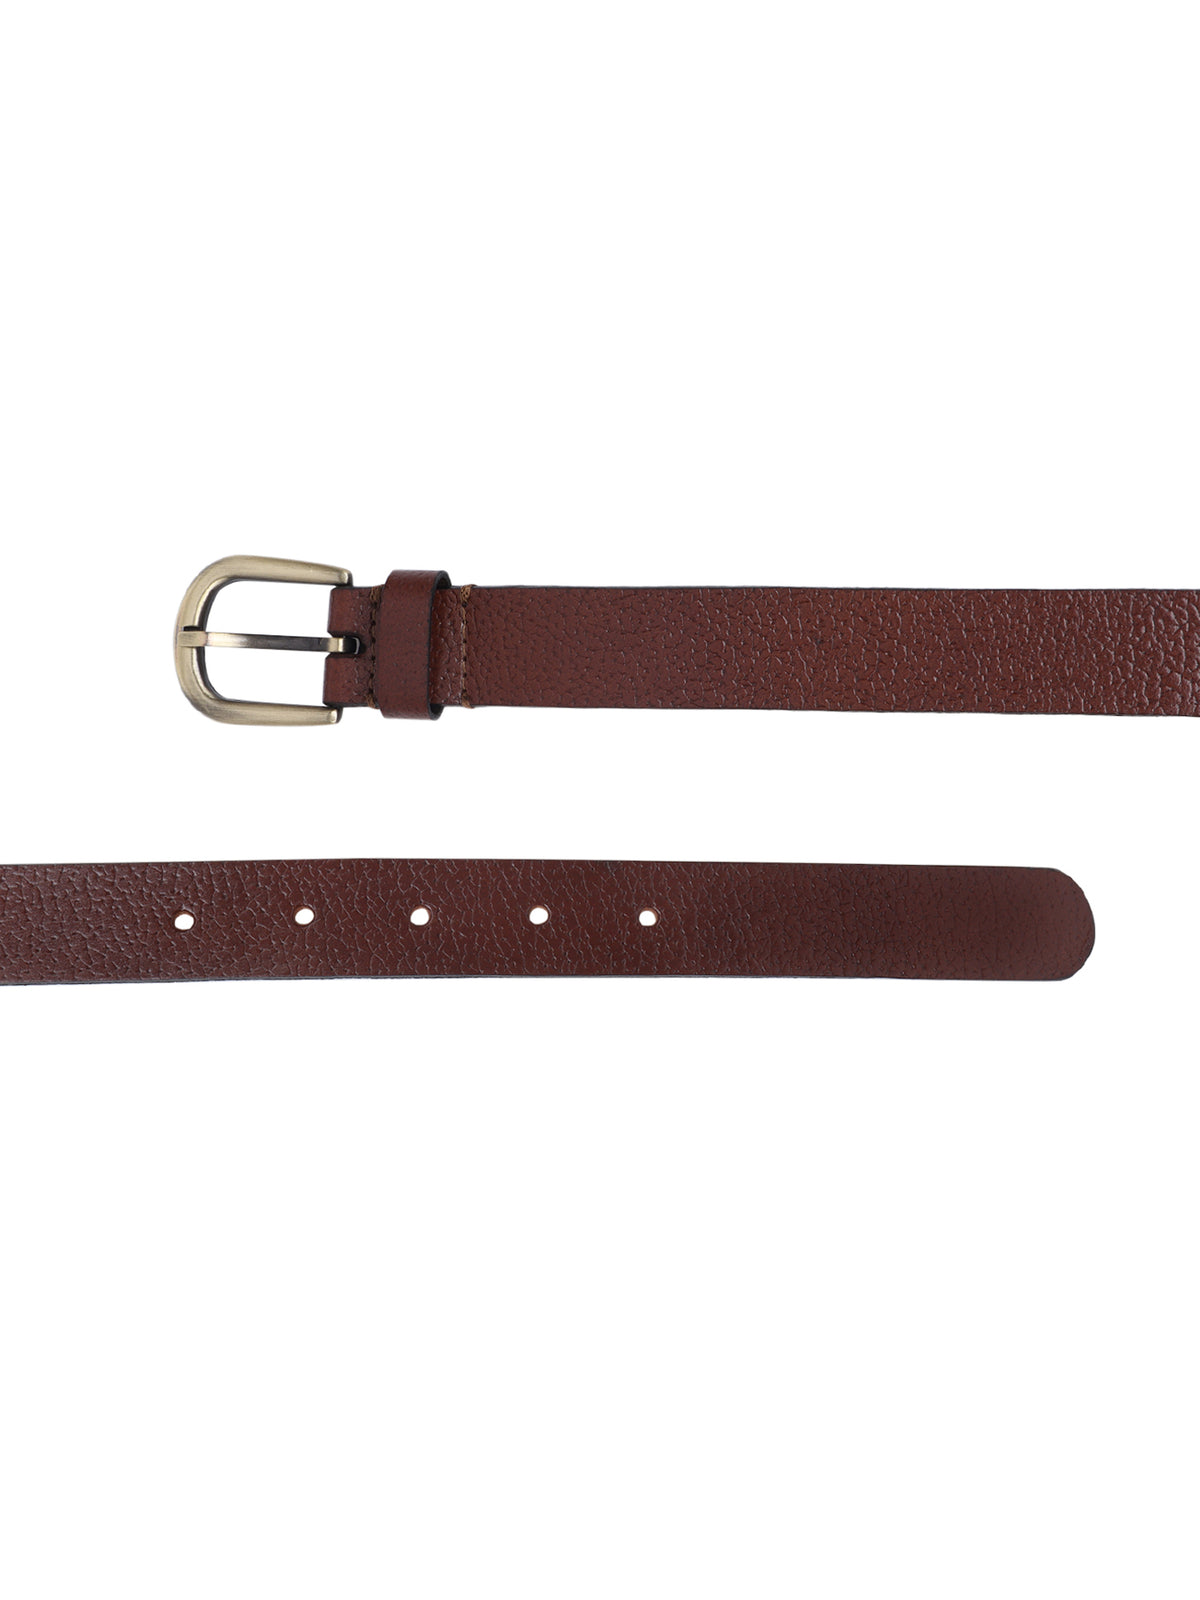 Genuine leather textured brown belt